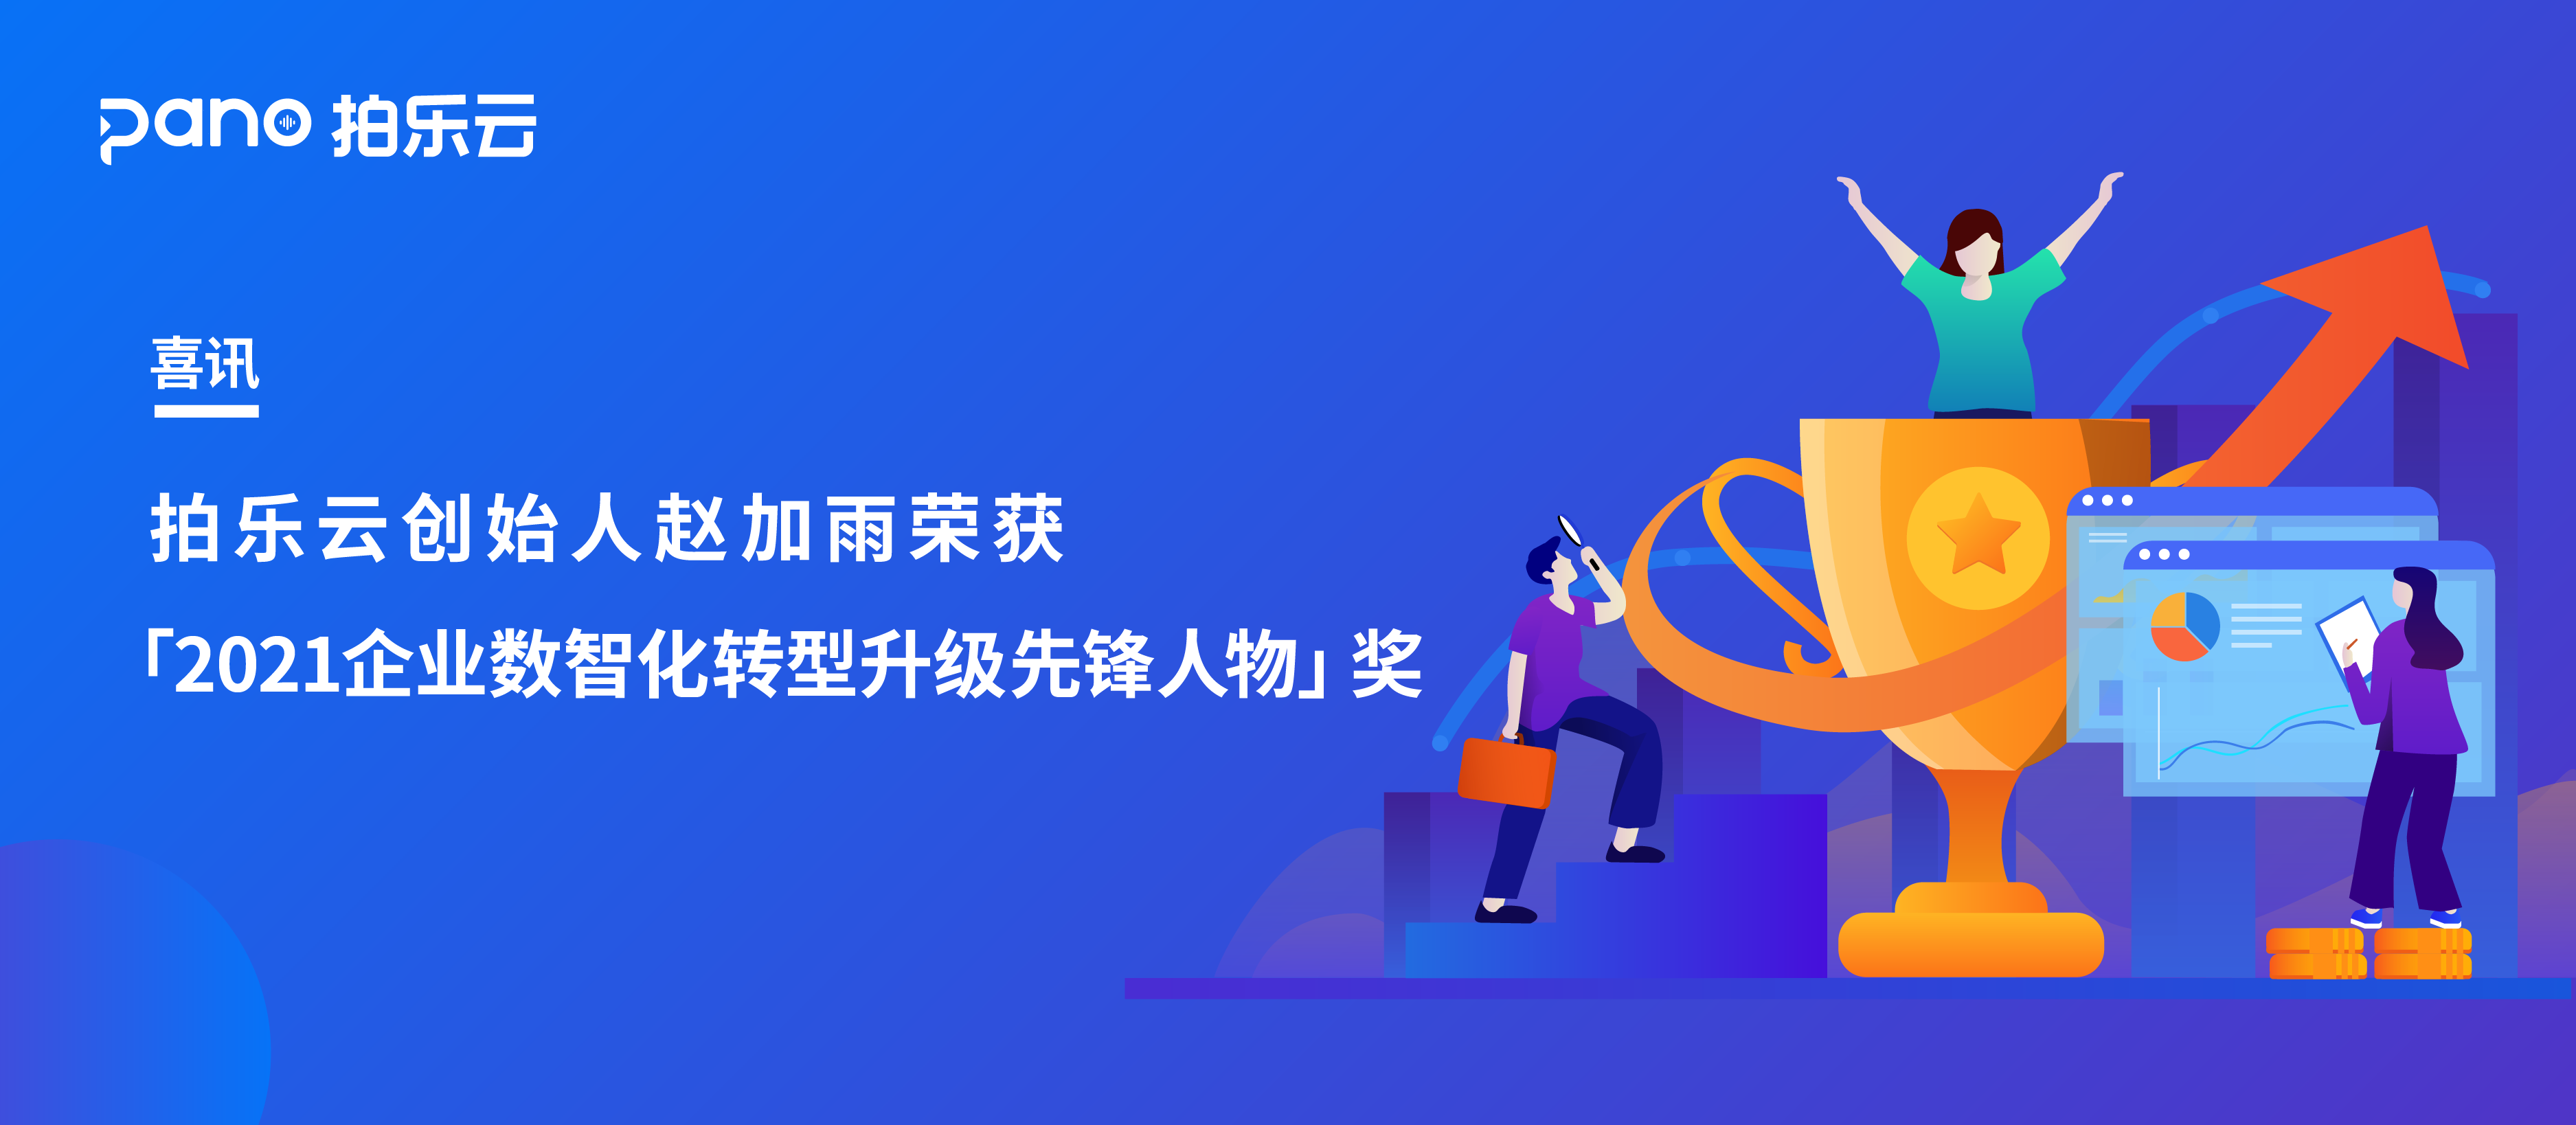 喜讯 | 拍乐云创始人赵加雨荣获「2021企业数智化转型升级先锋人物」奖